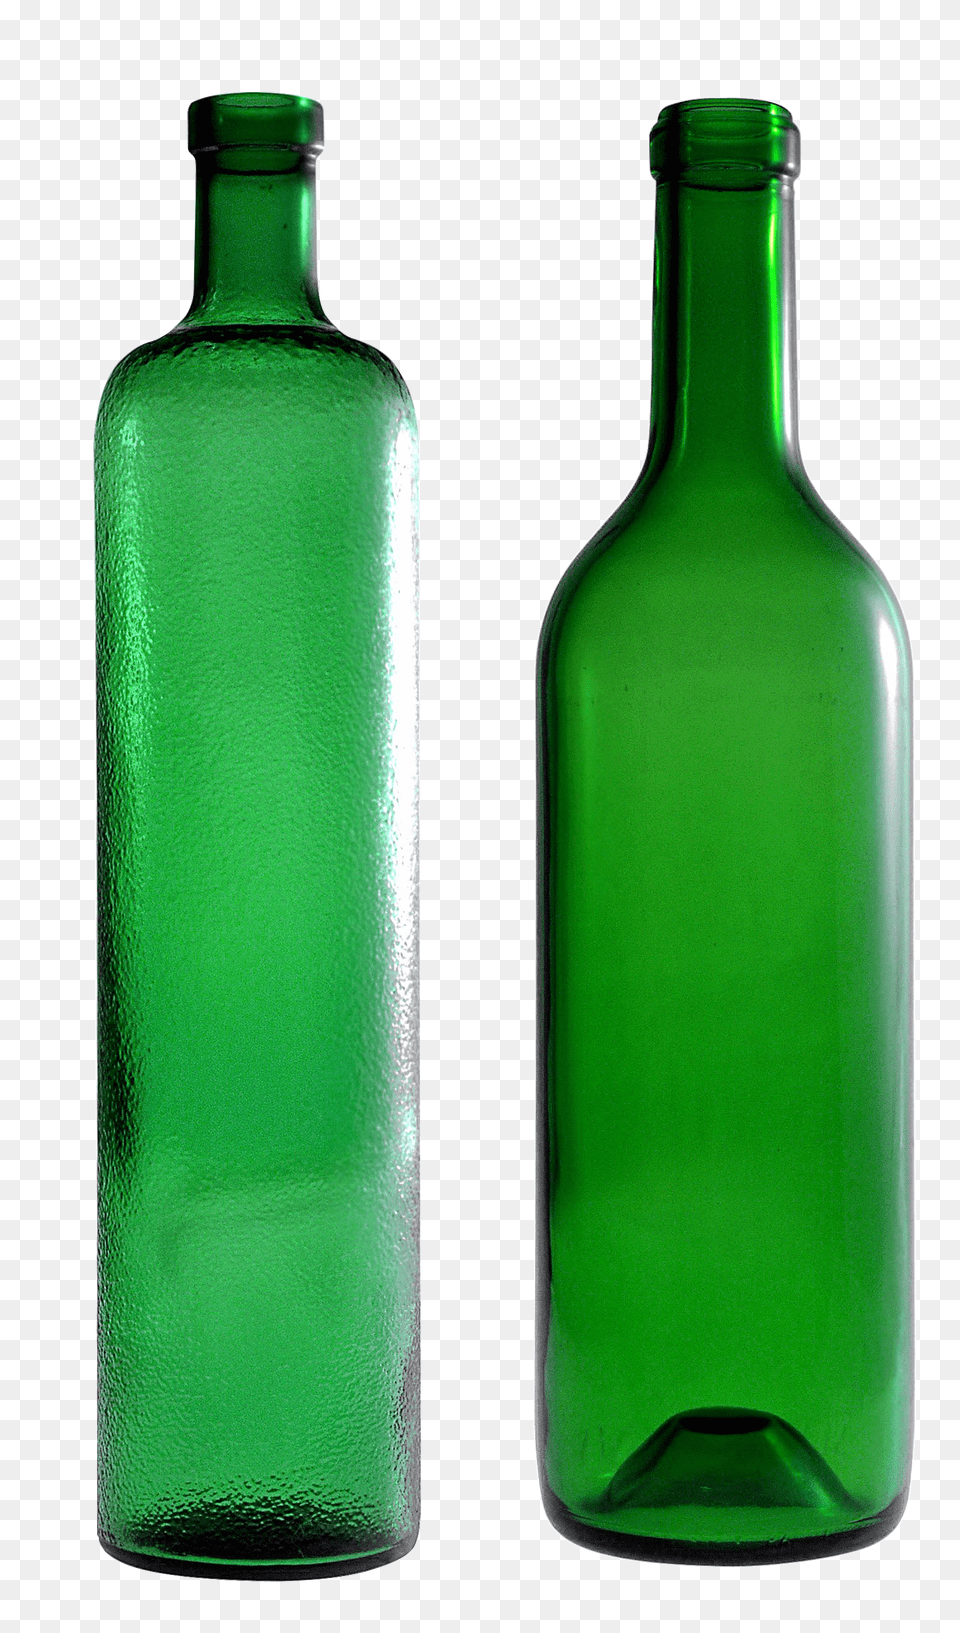 Bottle, Glass, Alcohol, Beer, Beverage Free Transparent Png